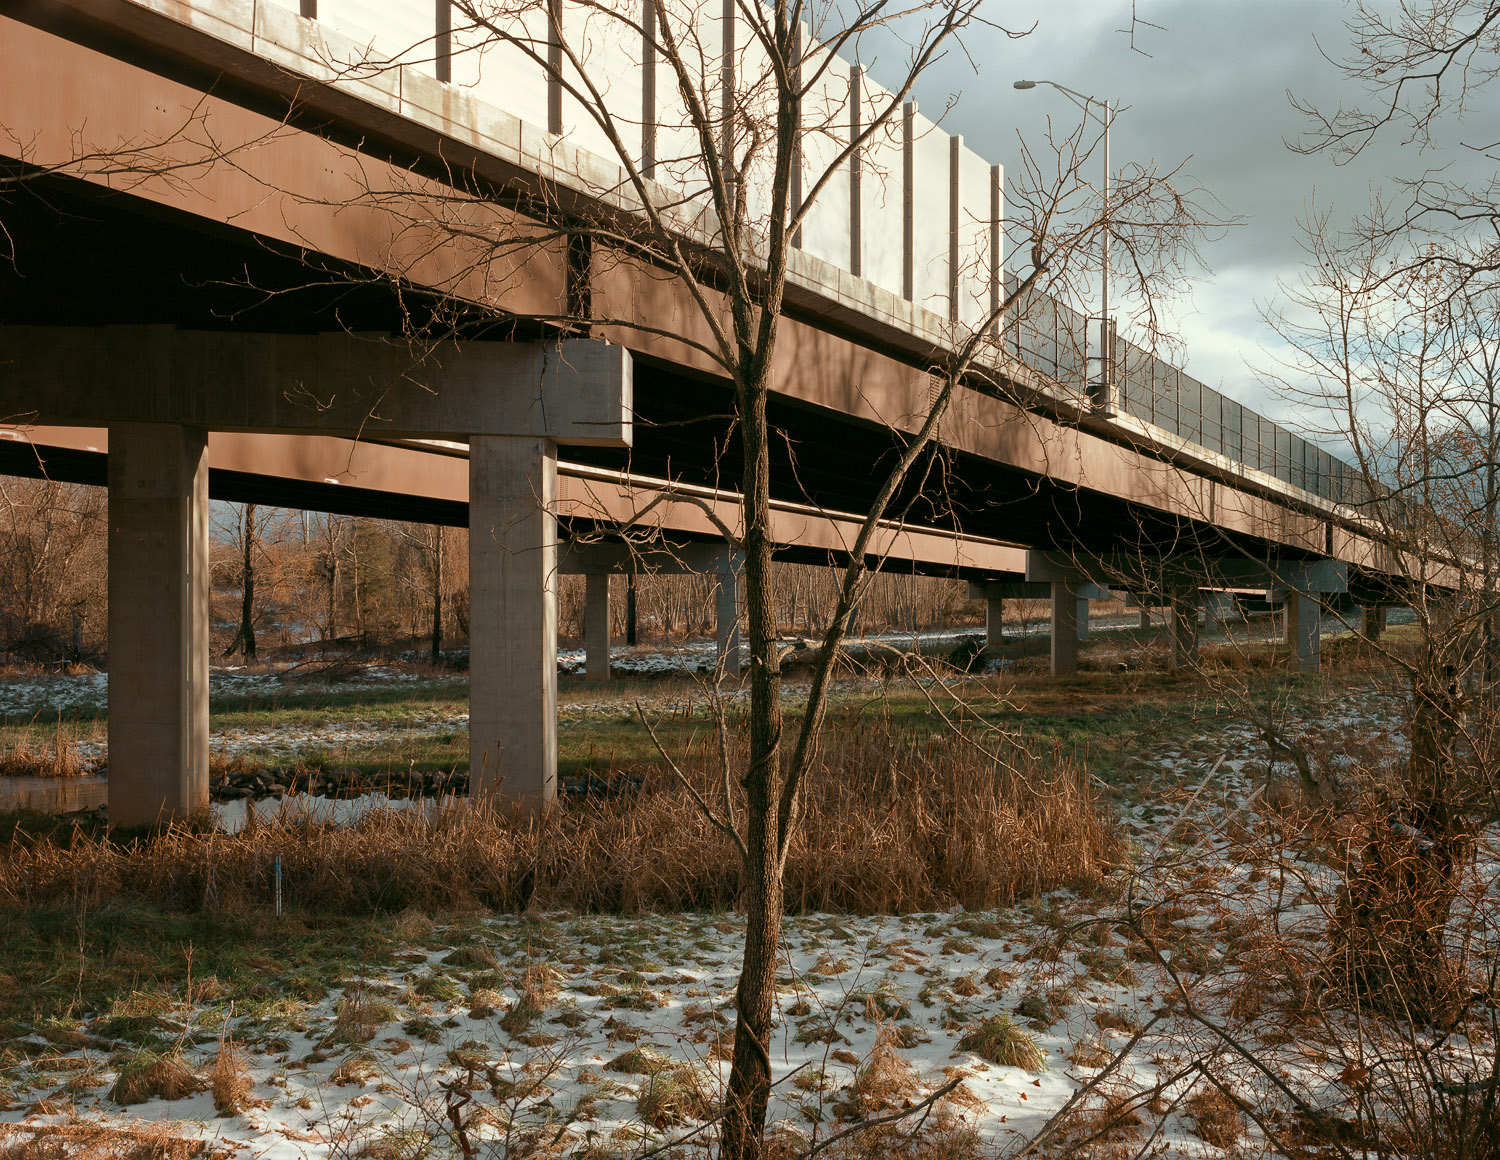  Highway overpass, Leesburg, Virginia, 2012 